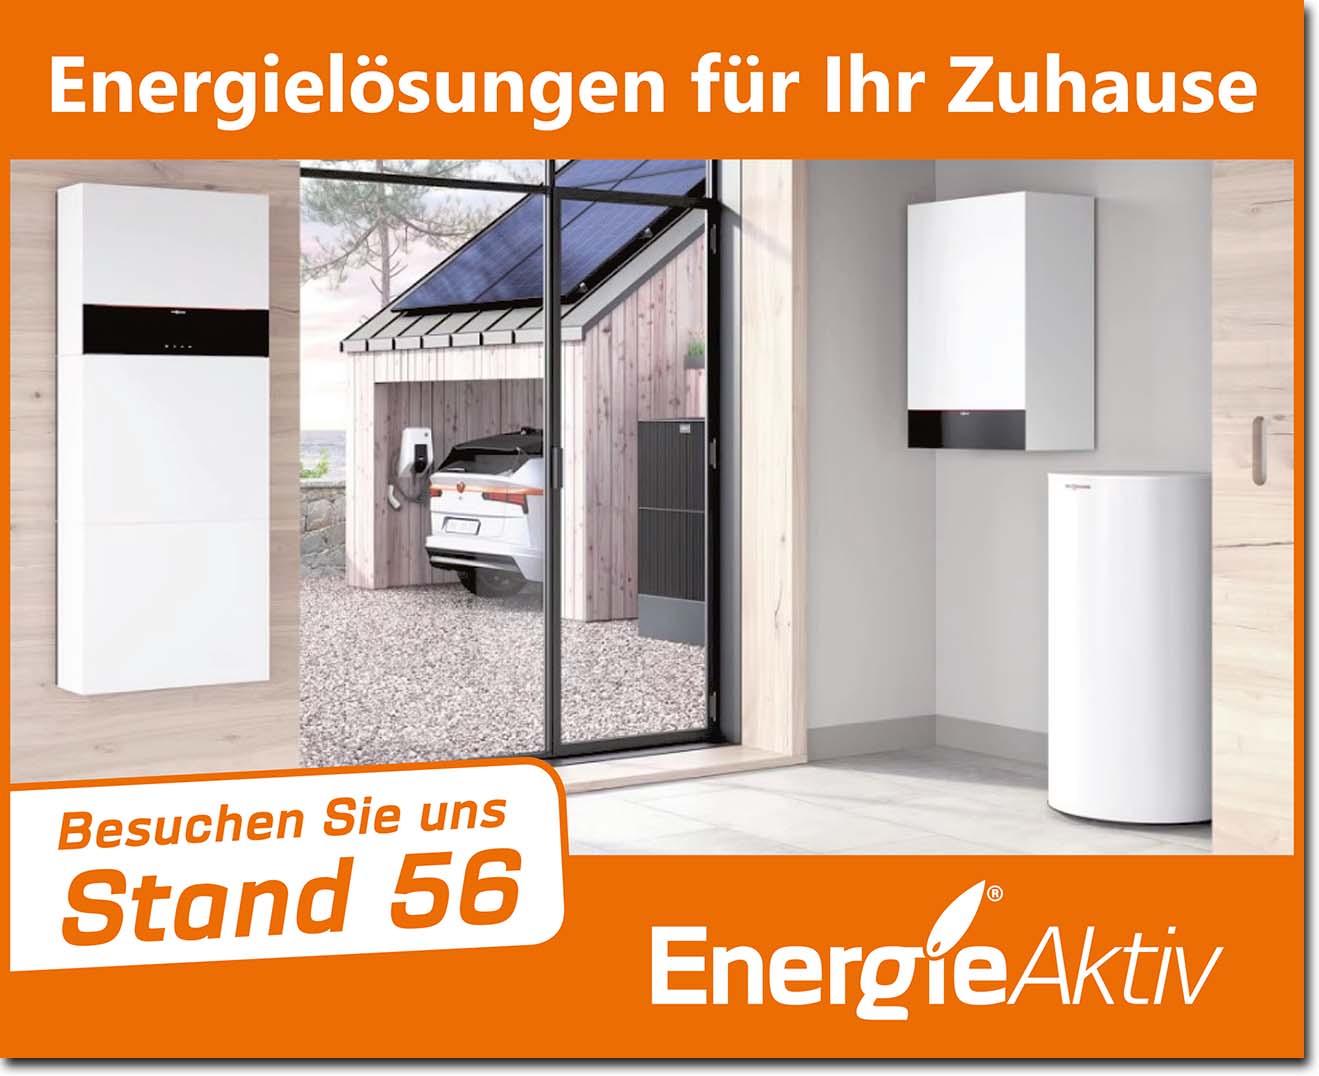 EnergieAktiv GmbH